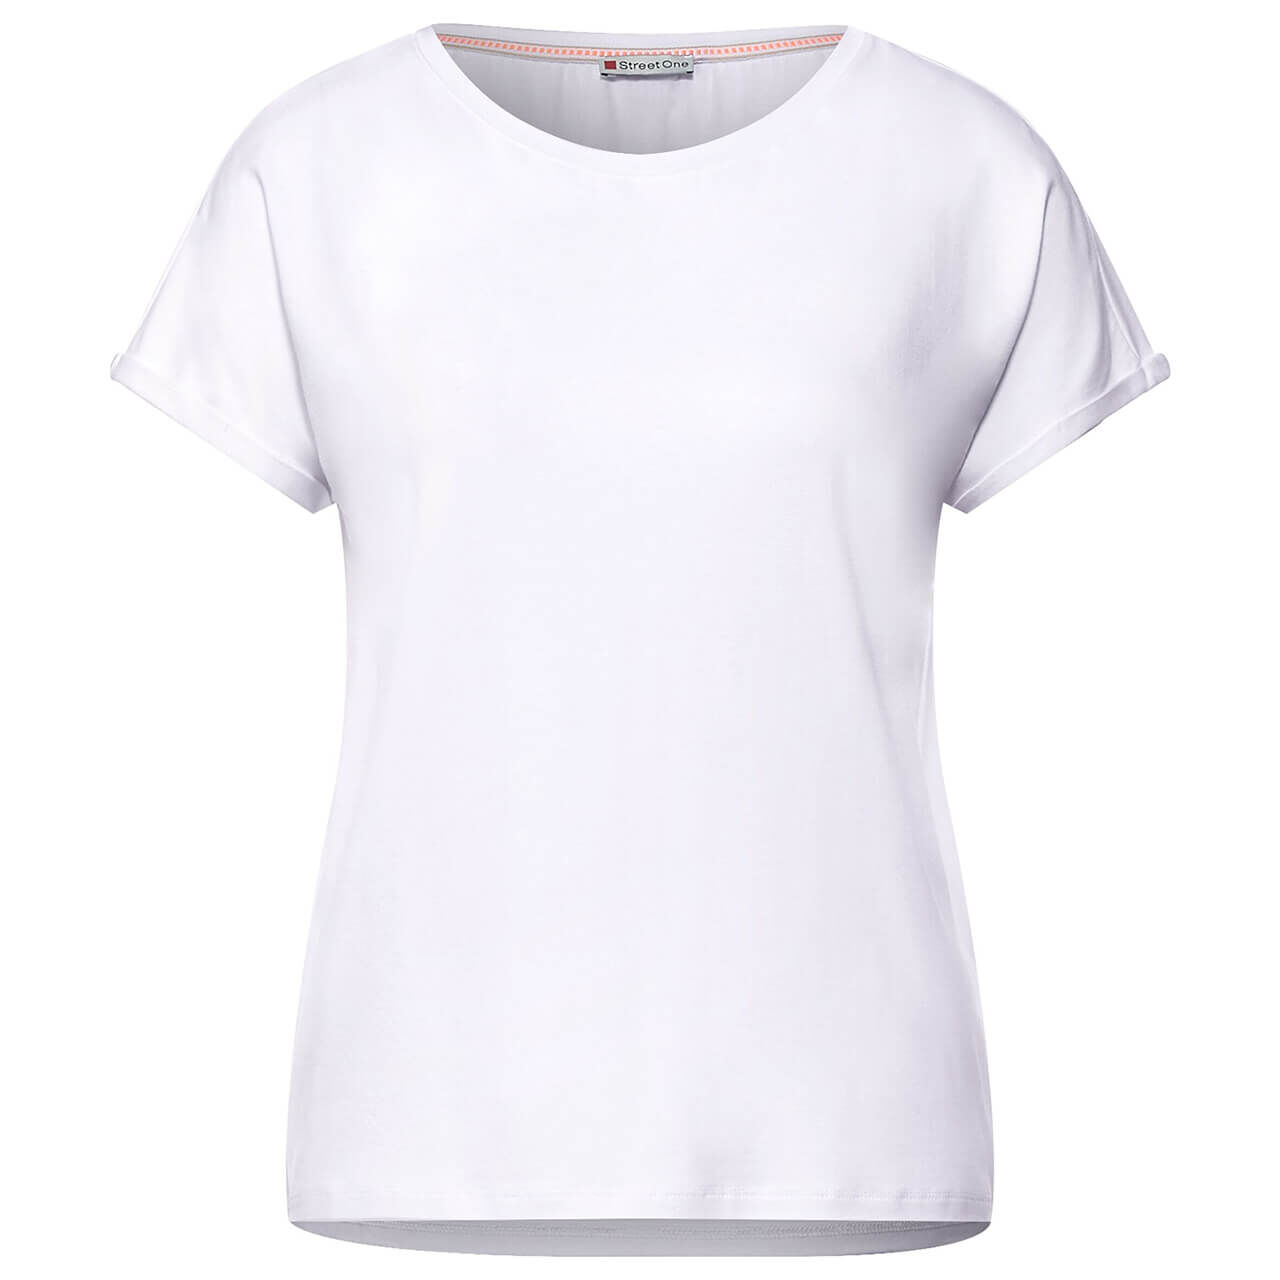 Street One Crista T-Shirt für Damen in Weiß, FarbNr.: 10000